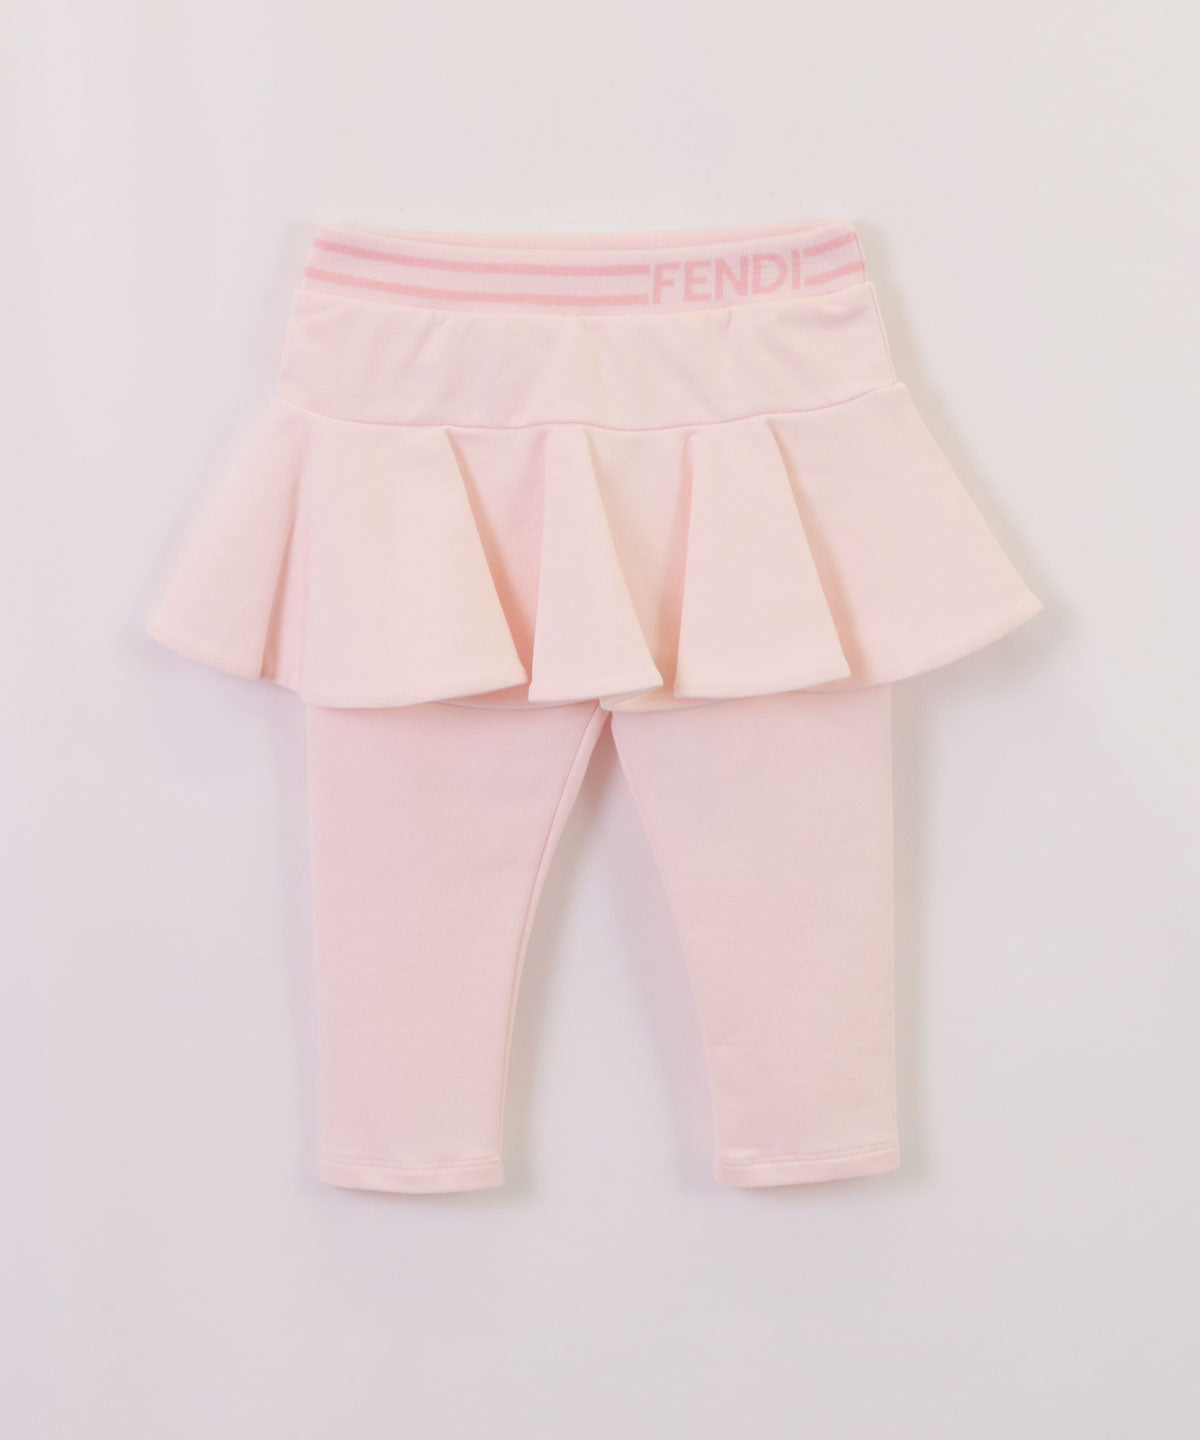 FENDI BABY スカート付きパンツ 21-060522016-16 24M(90cm) – 世界の